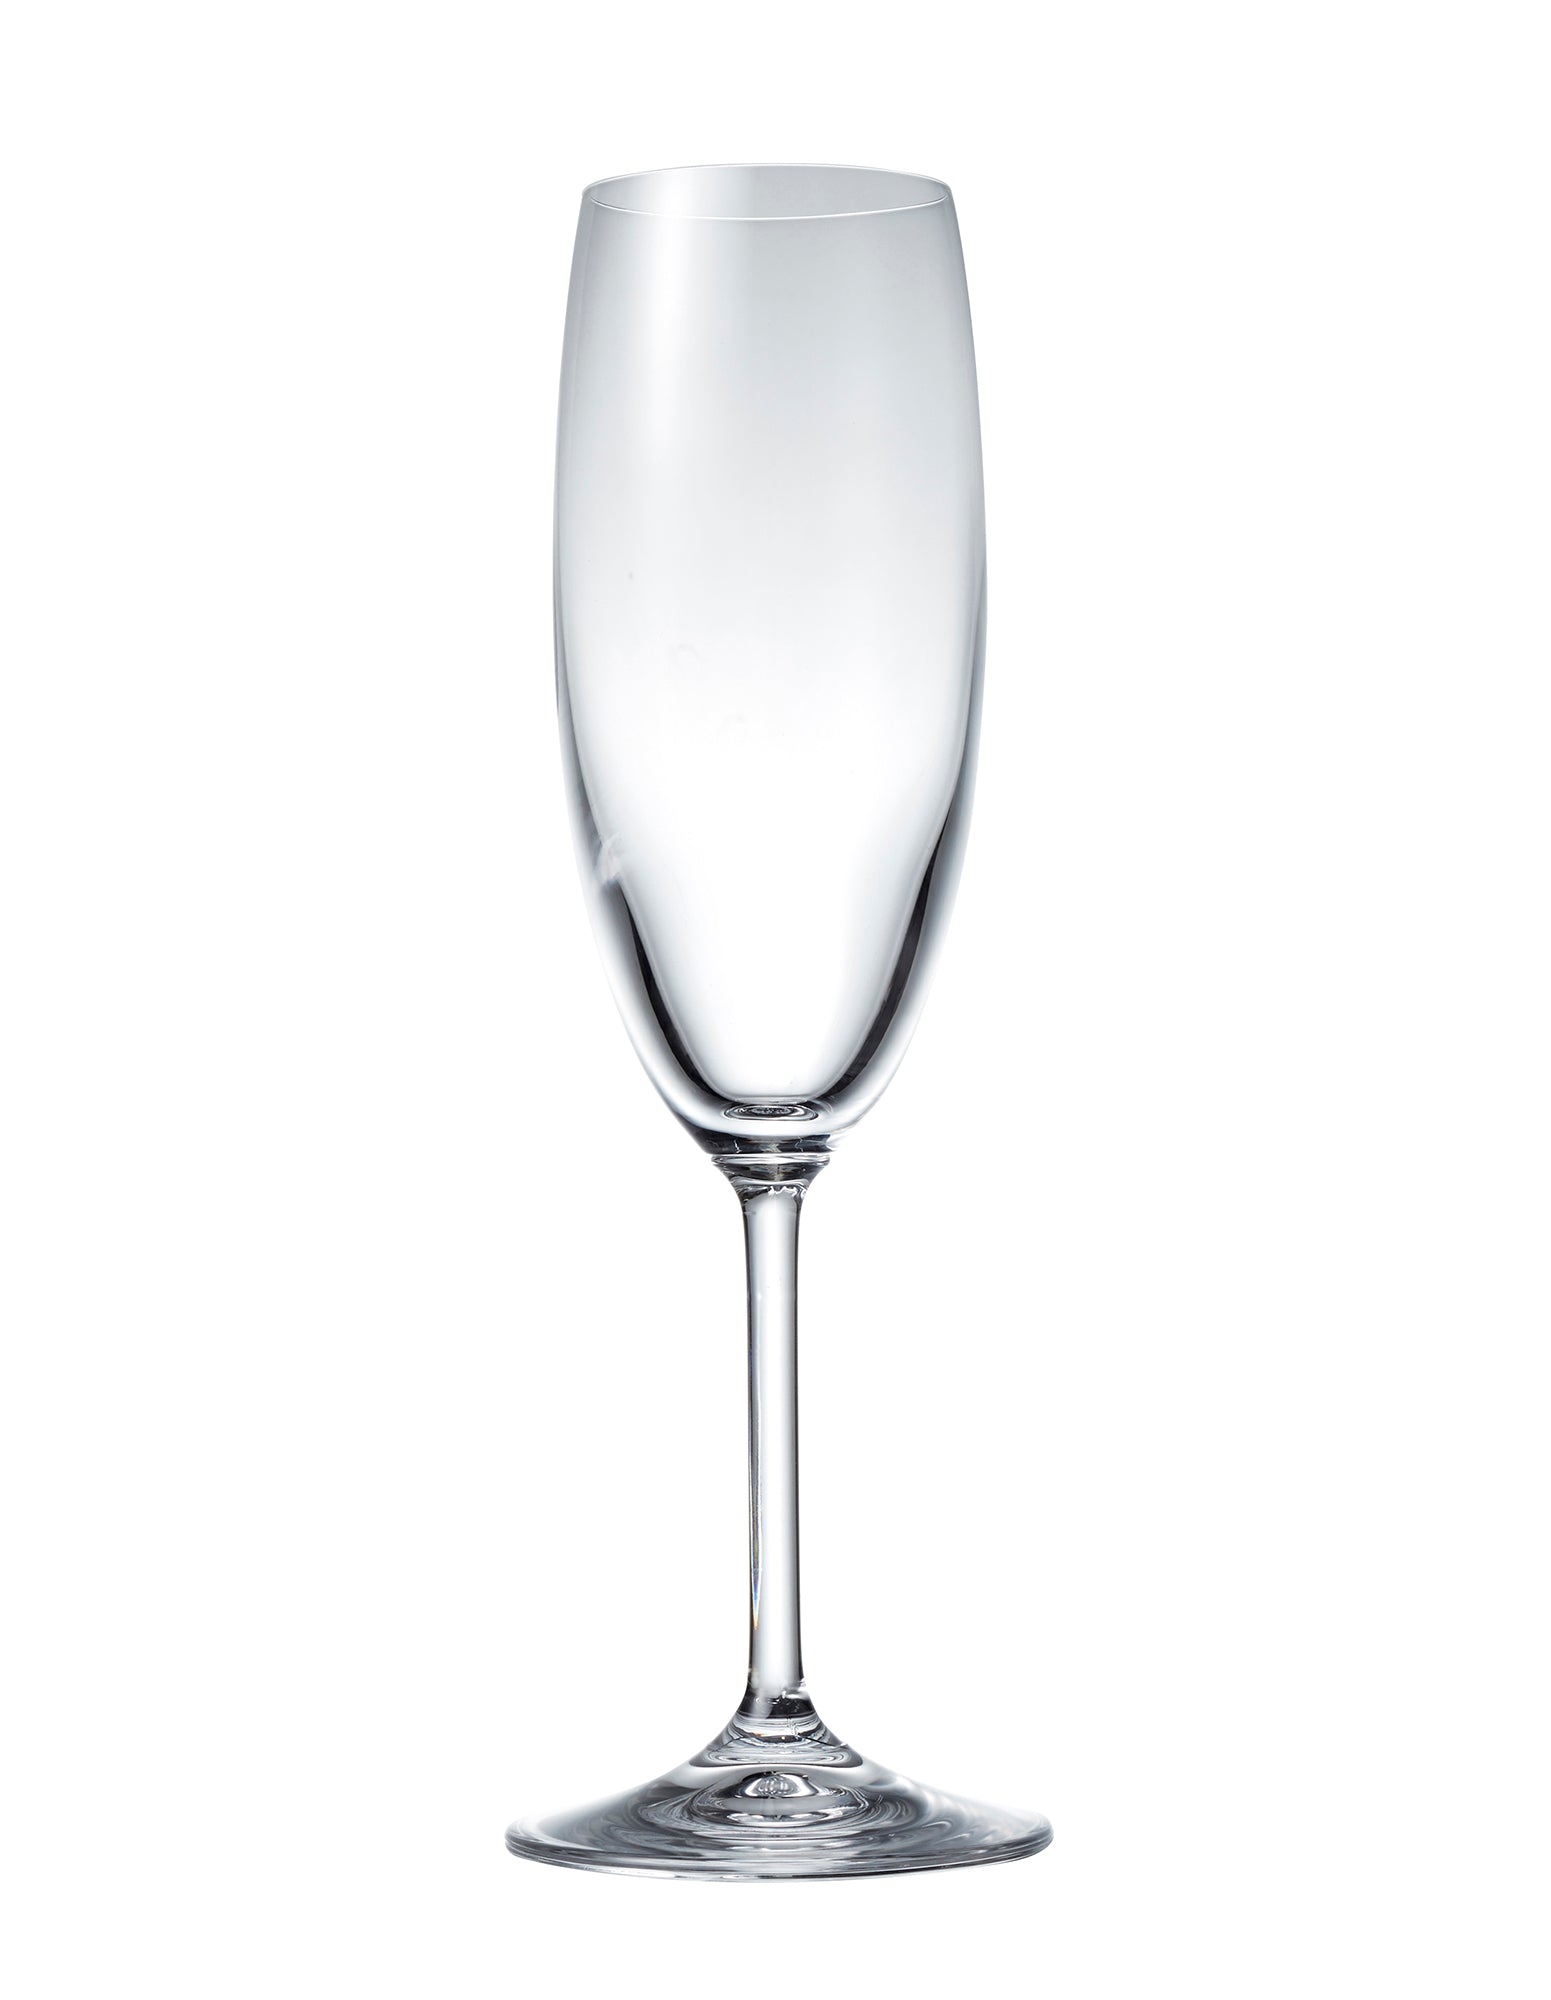 Image of Vino Vino Flute Glasses 175mL - Set of 8